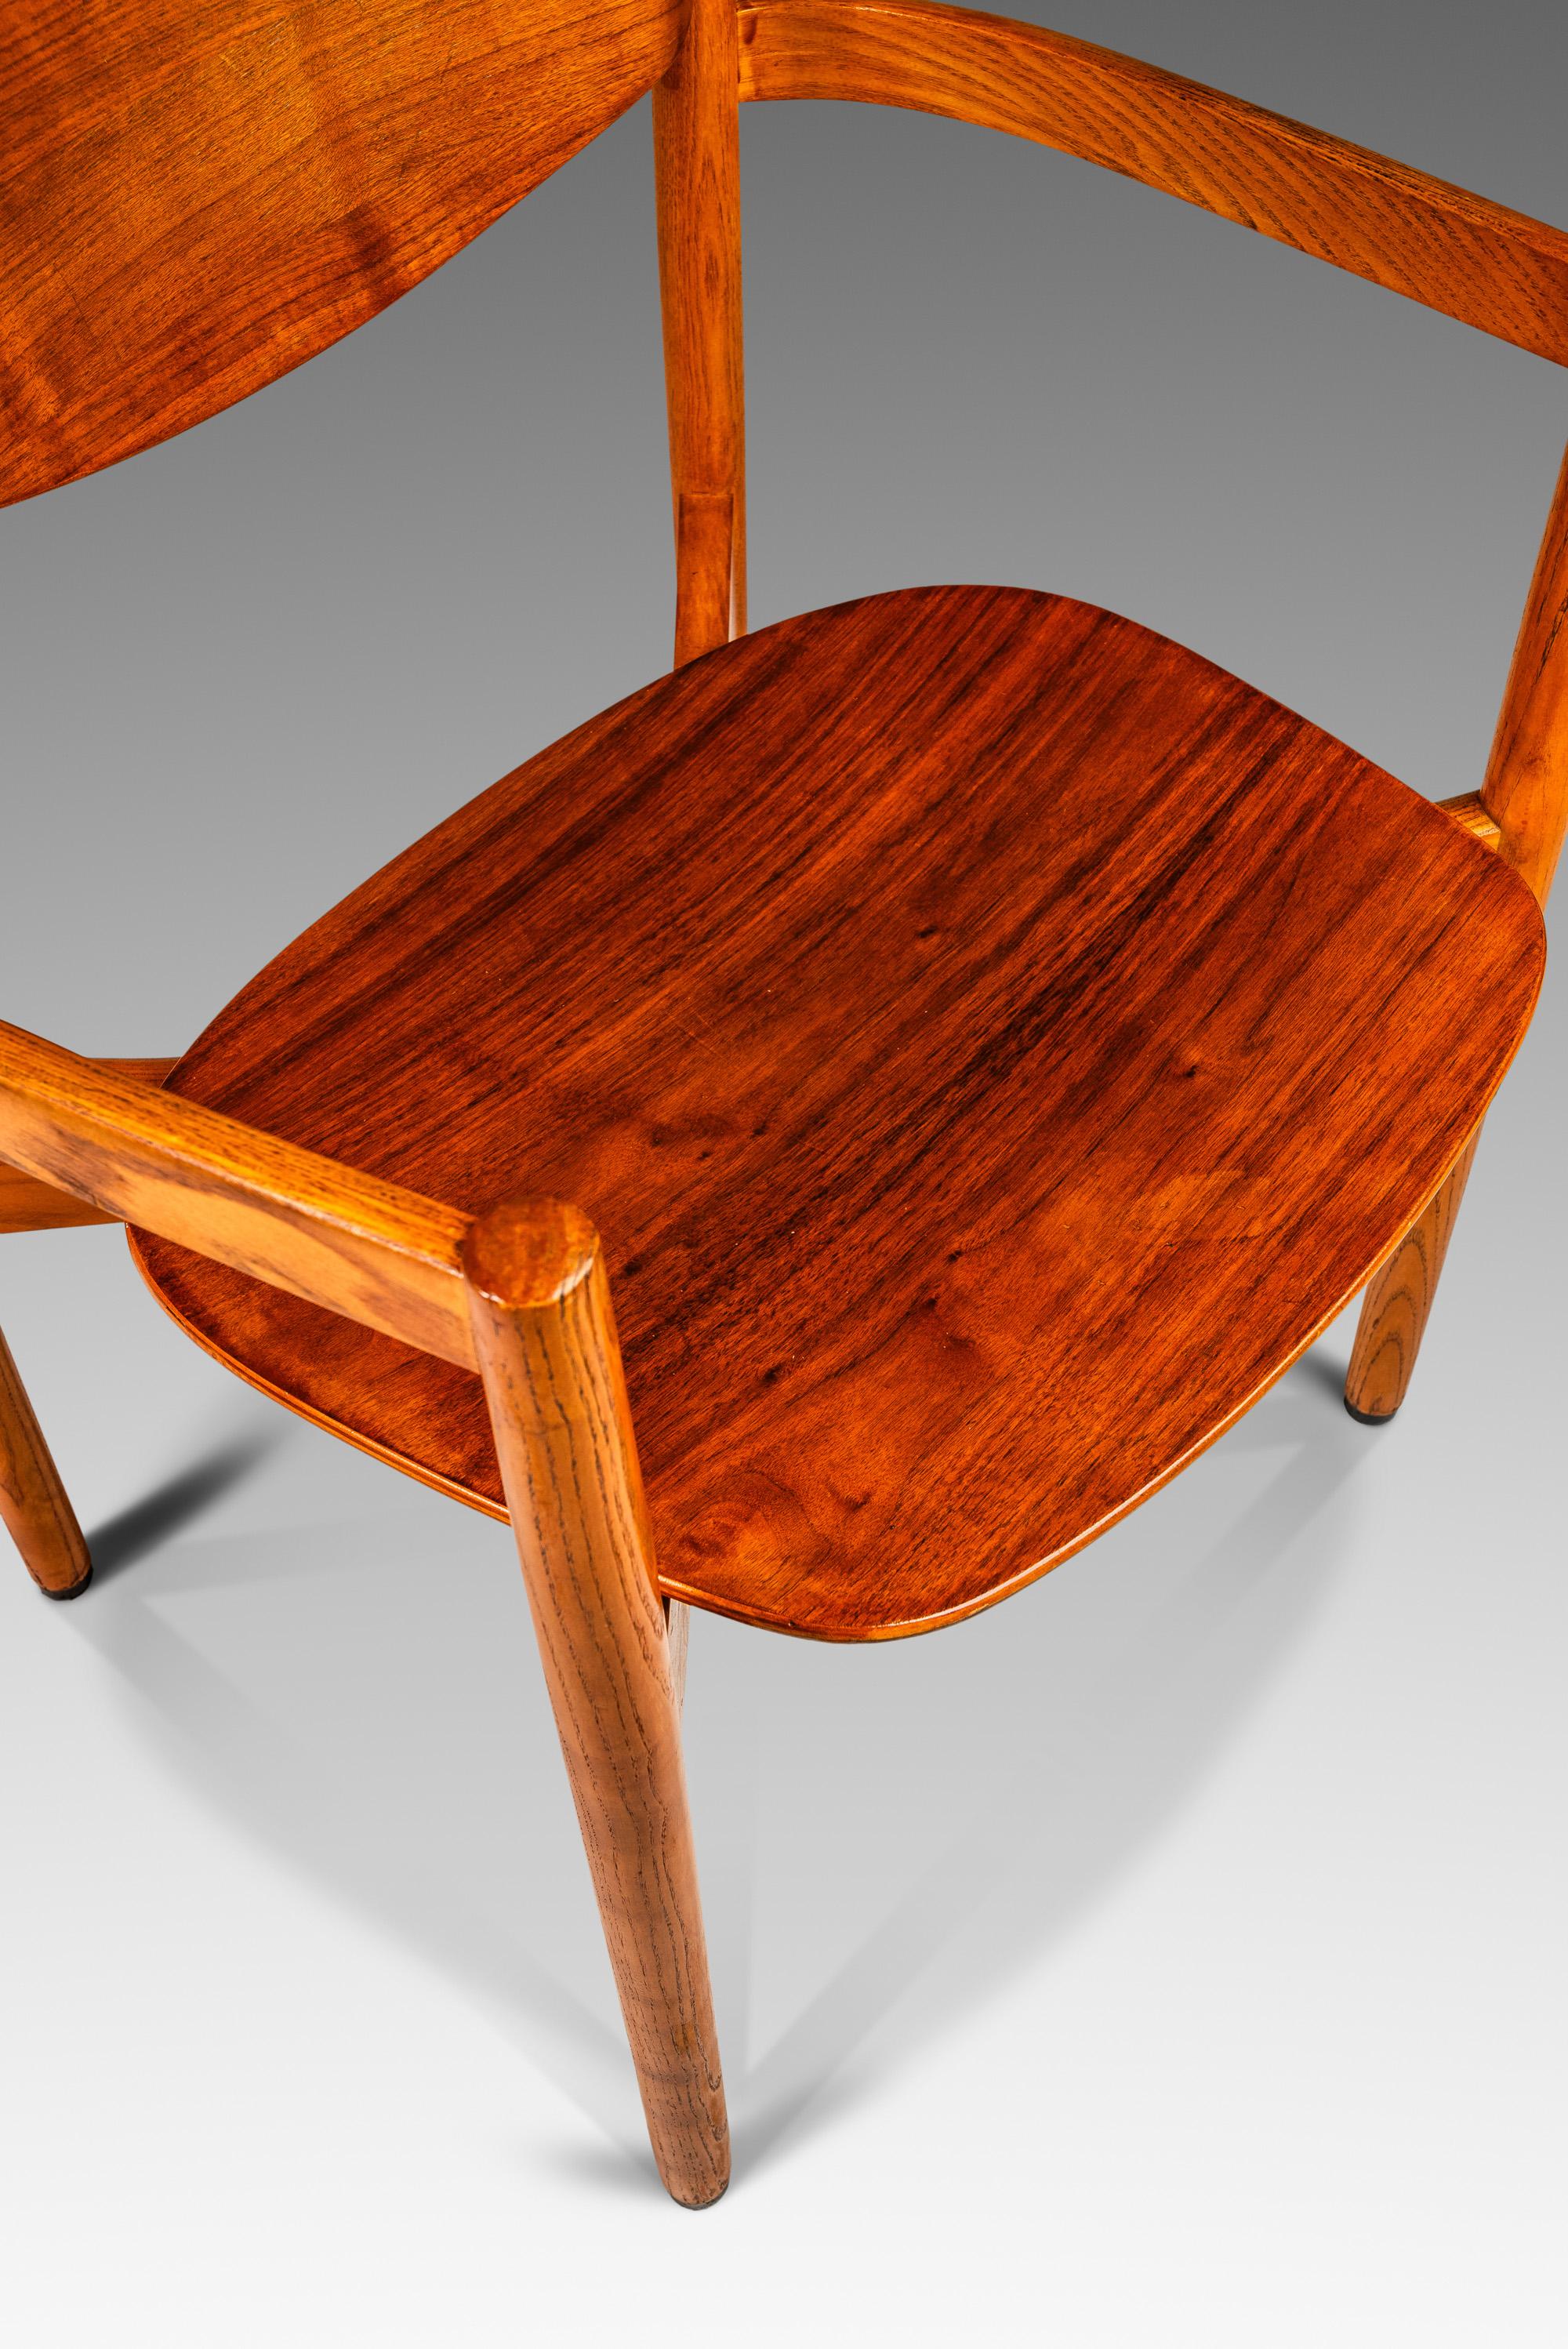 Single Mid-Century Modern Chair in Oak & Walnut  by Jens Risom, USA, c. 1960s For Sale 2